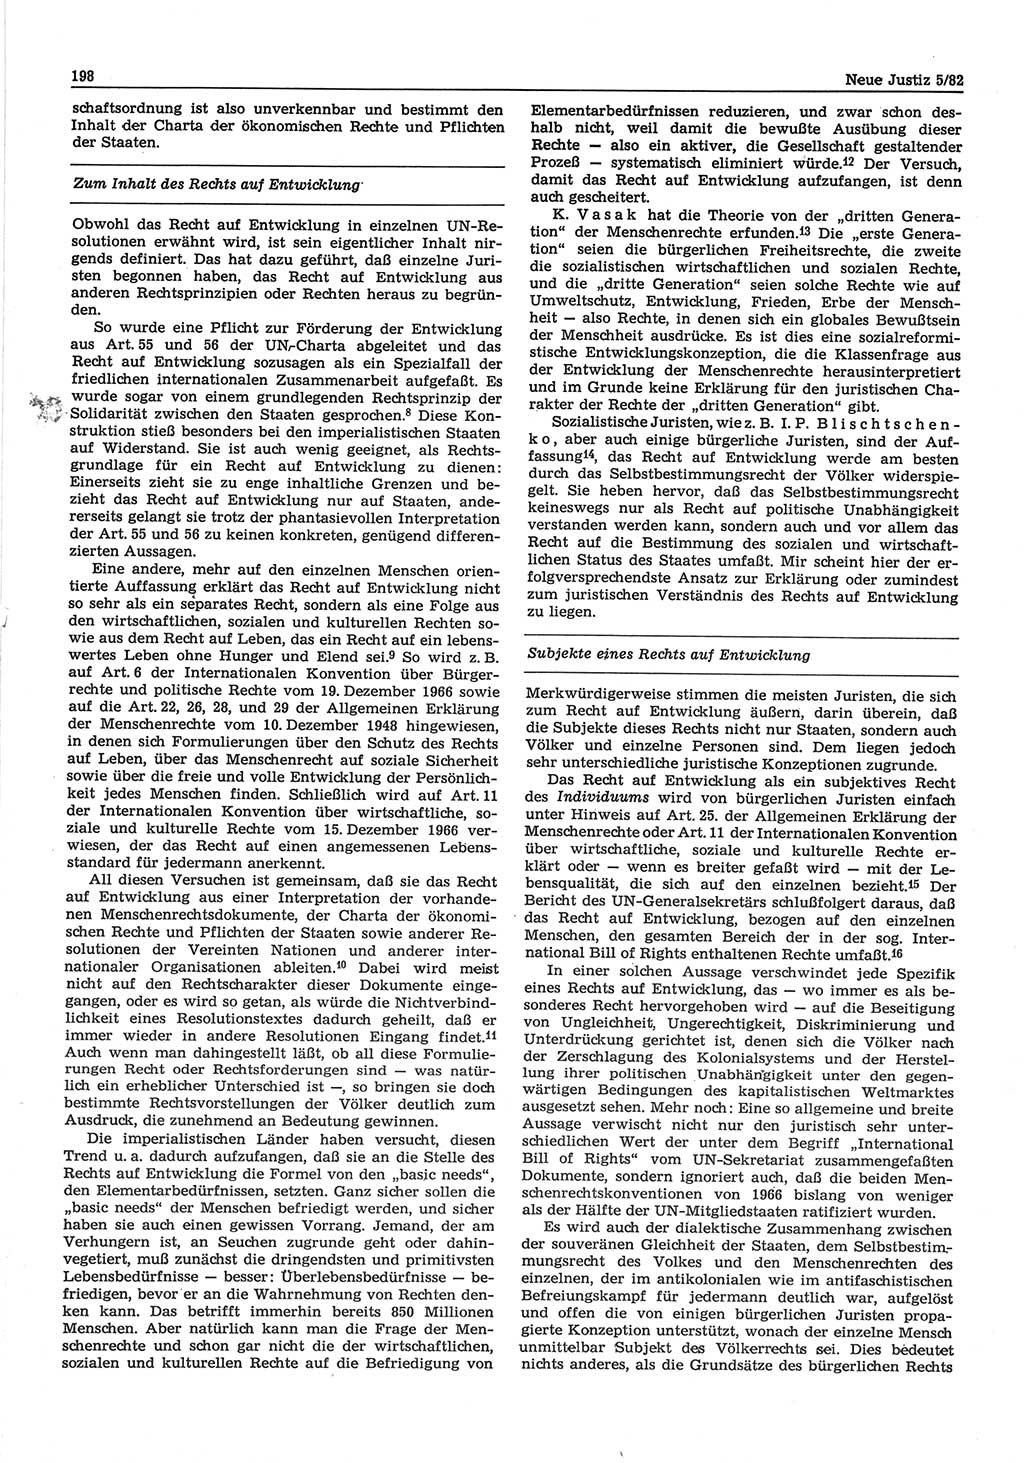 Neue Justiz (NJ), Zeitschrift für sozialistisches Recht und Gesetzlichkeit [Deutsche Demokratische Republik (DDR)], 36. Jahrgang 1982, Seite 198 (NJ DDR 1982, S. 198)